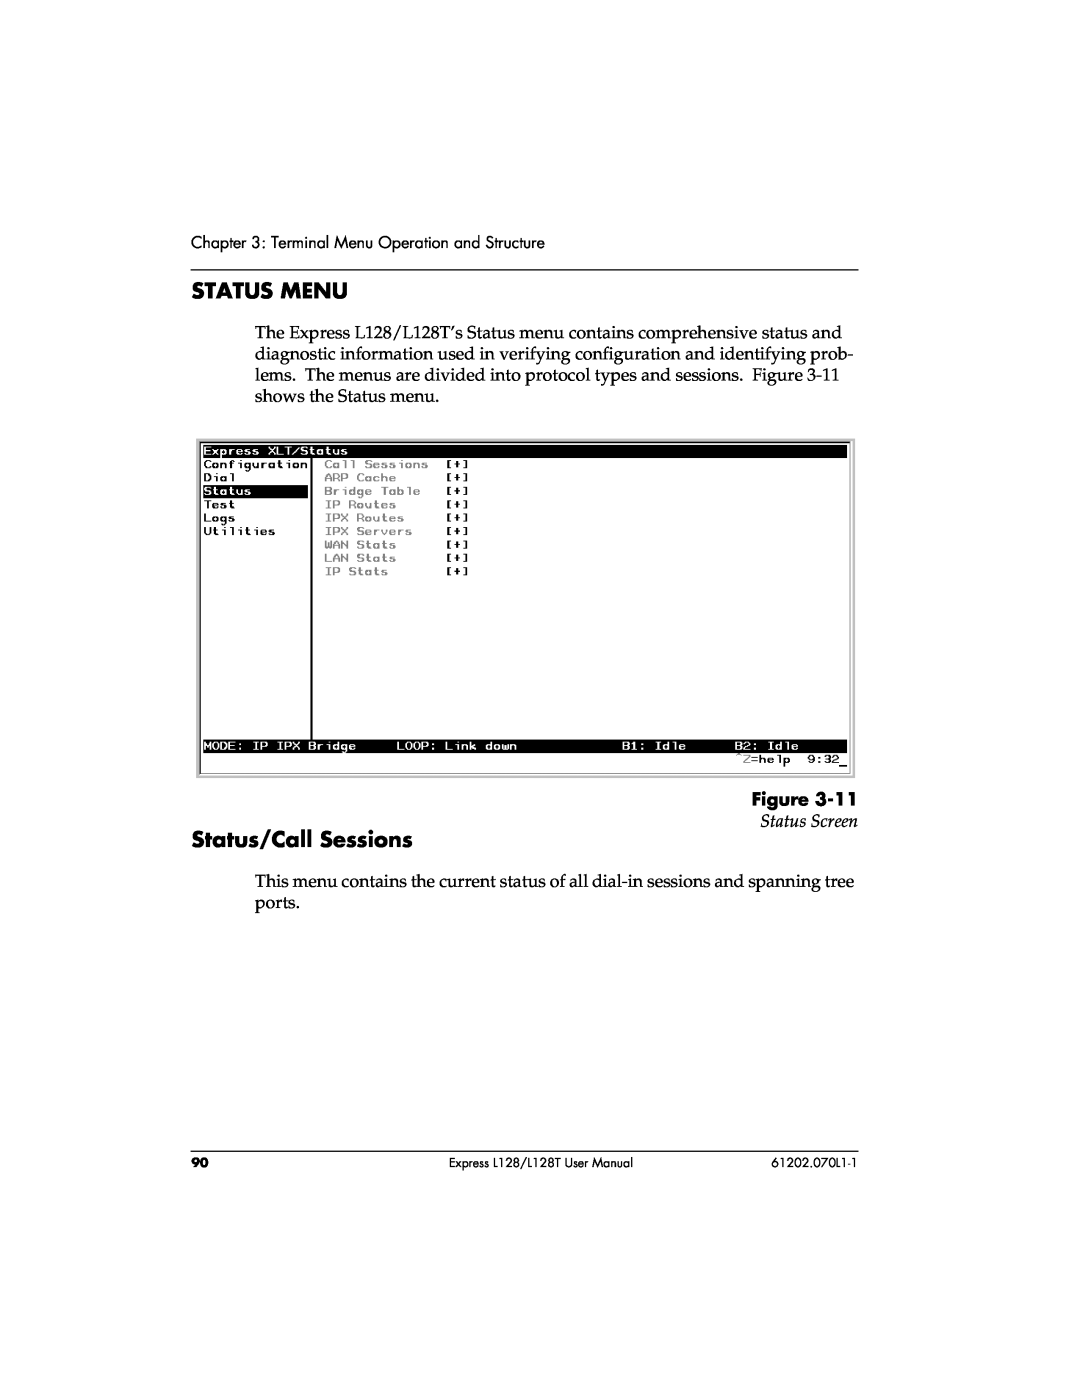 ADTRAN L128T user manual Status Menu, Status/Call Sessions, Status Screen 